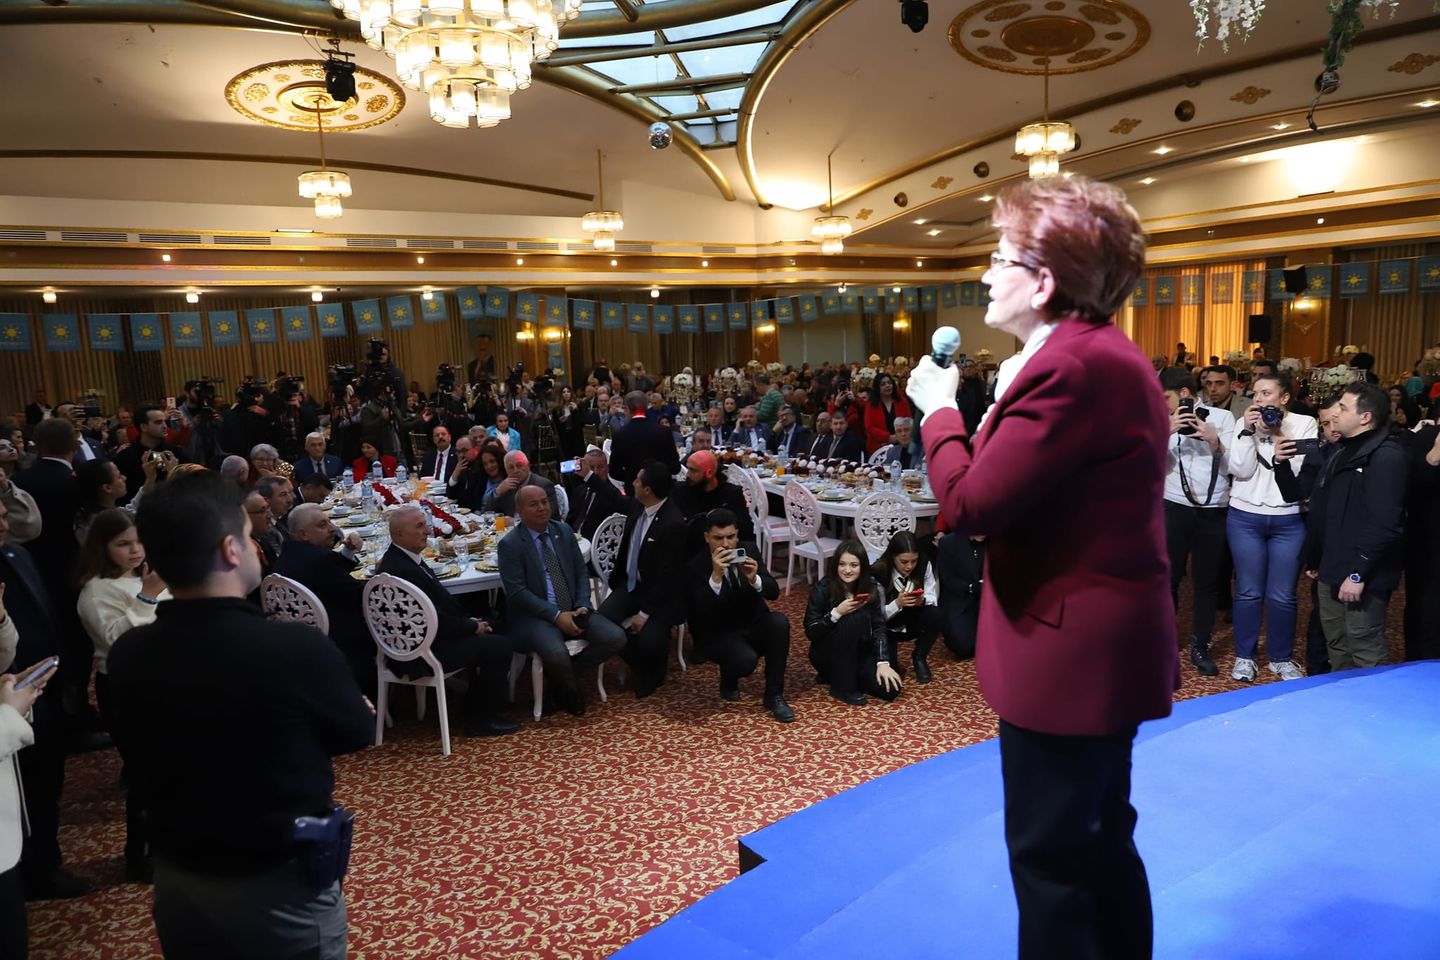 İYİ Parti Milletvekili Hakan Şeref Olgun, Ramazan coşkusunu Bursa'da yaşadı ve yerel seçim adaylarına destek verdi.